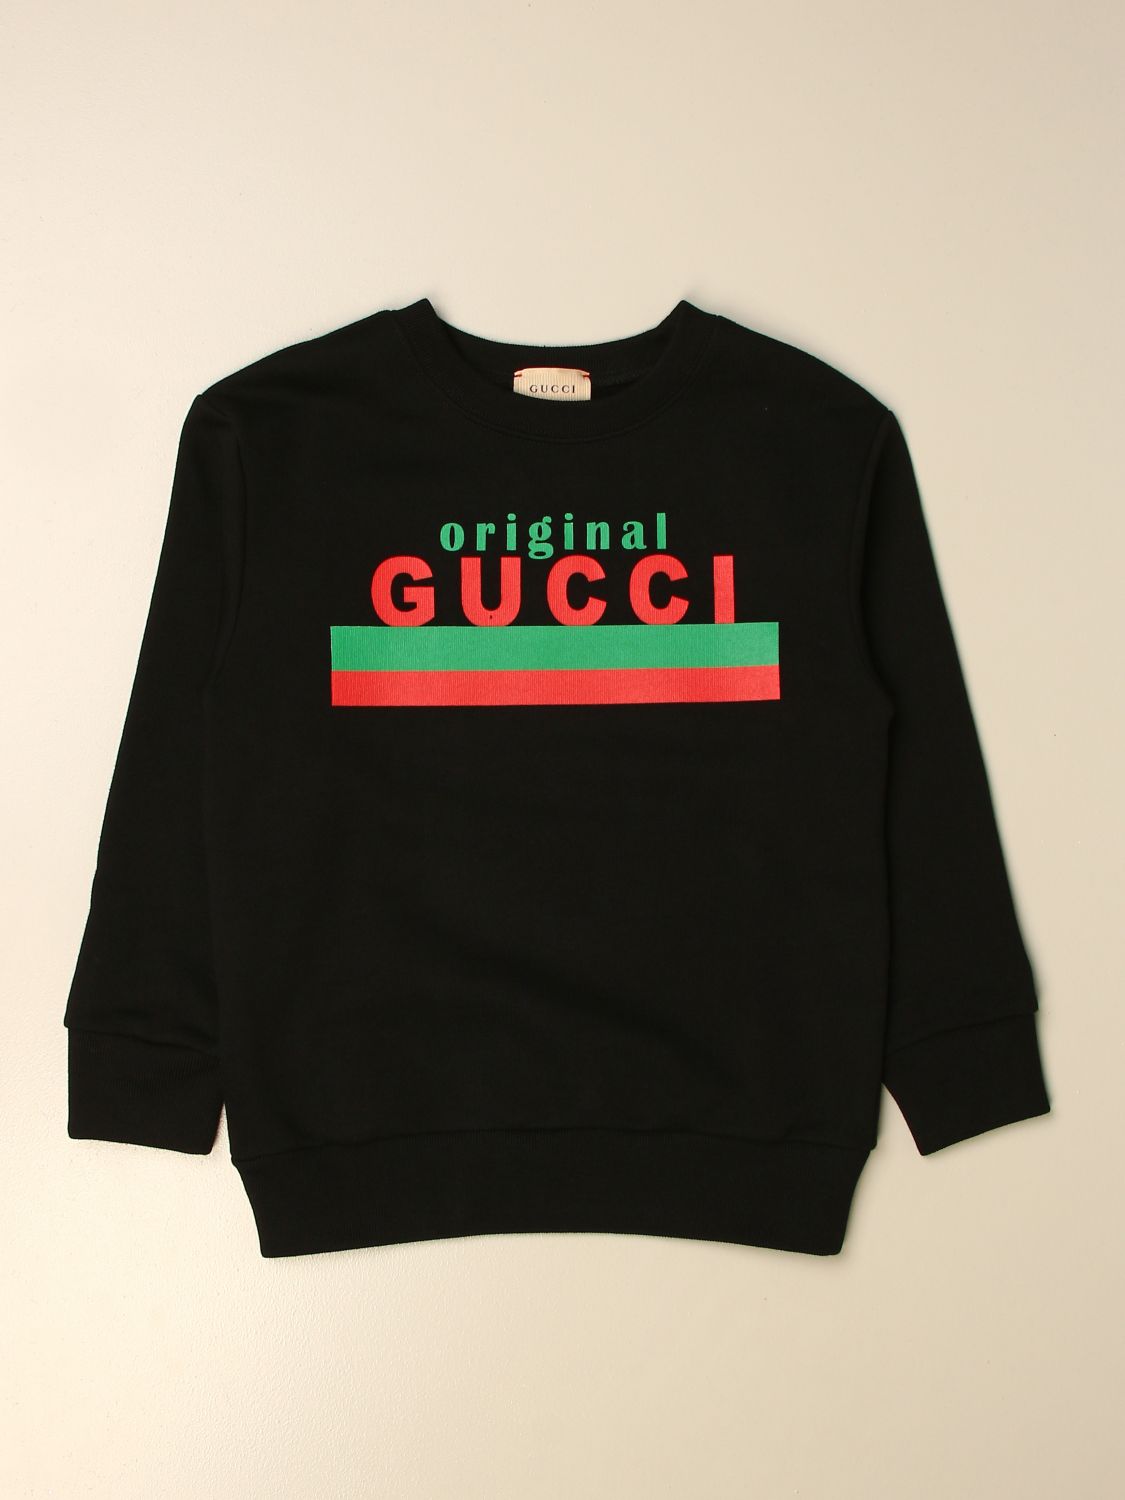 gucci sweater black